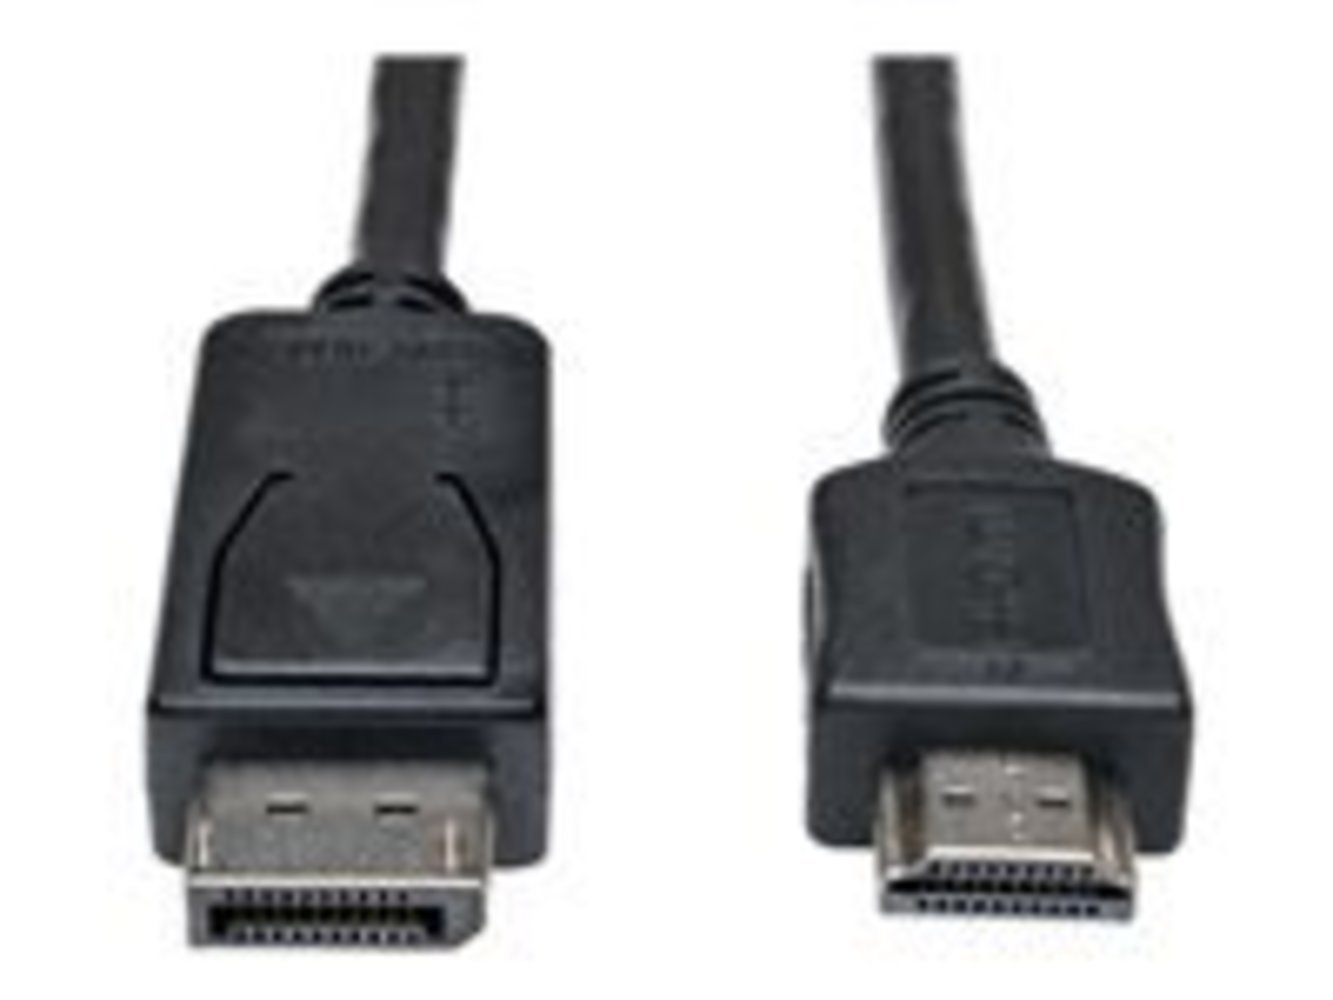 EATON TRIPPLITE DisplayPort to HDMI Adapter Kabel M/M 6ft 1.8m